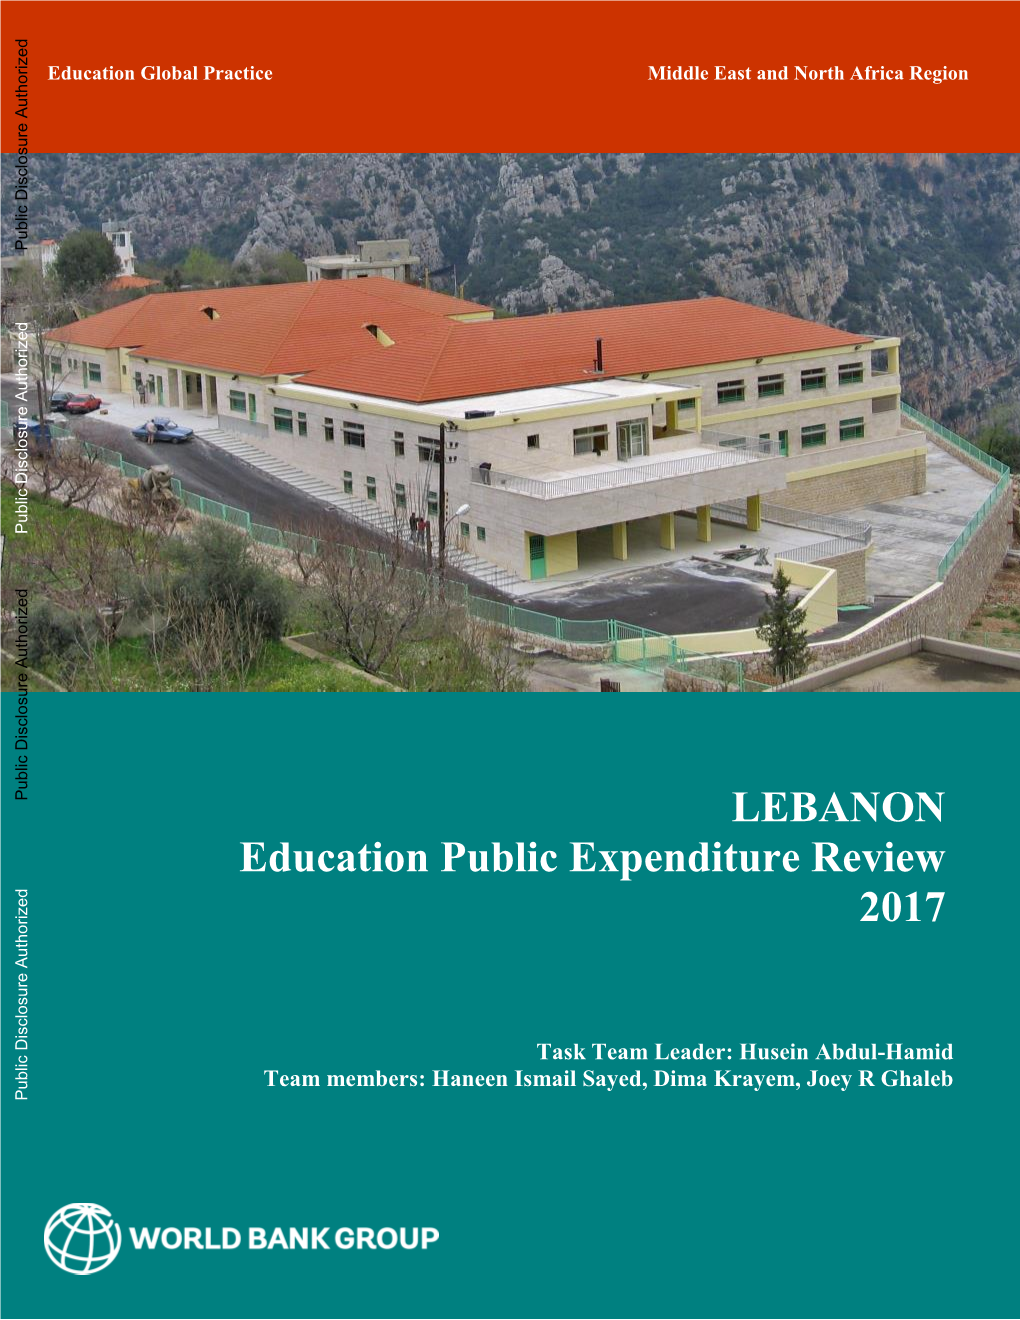 Lebanon Education Public Expenditure Review, 2017